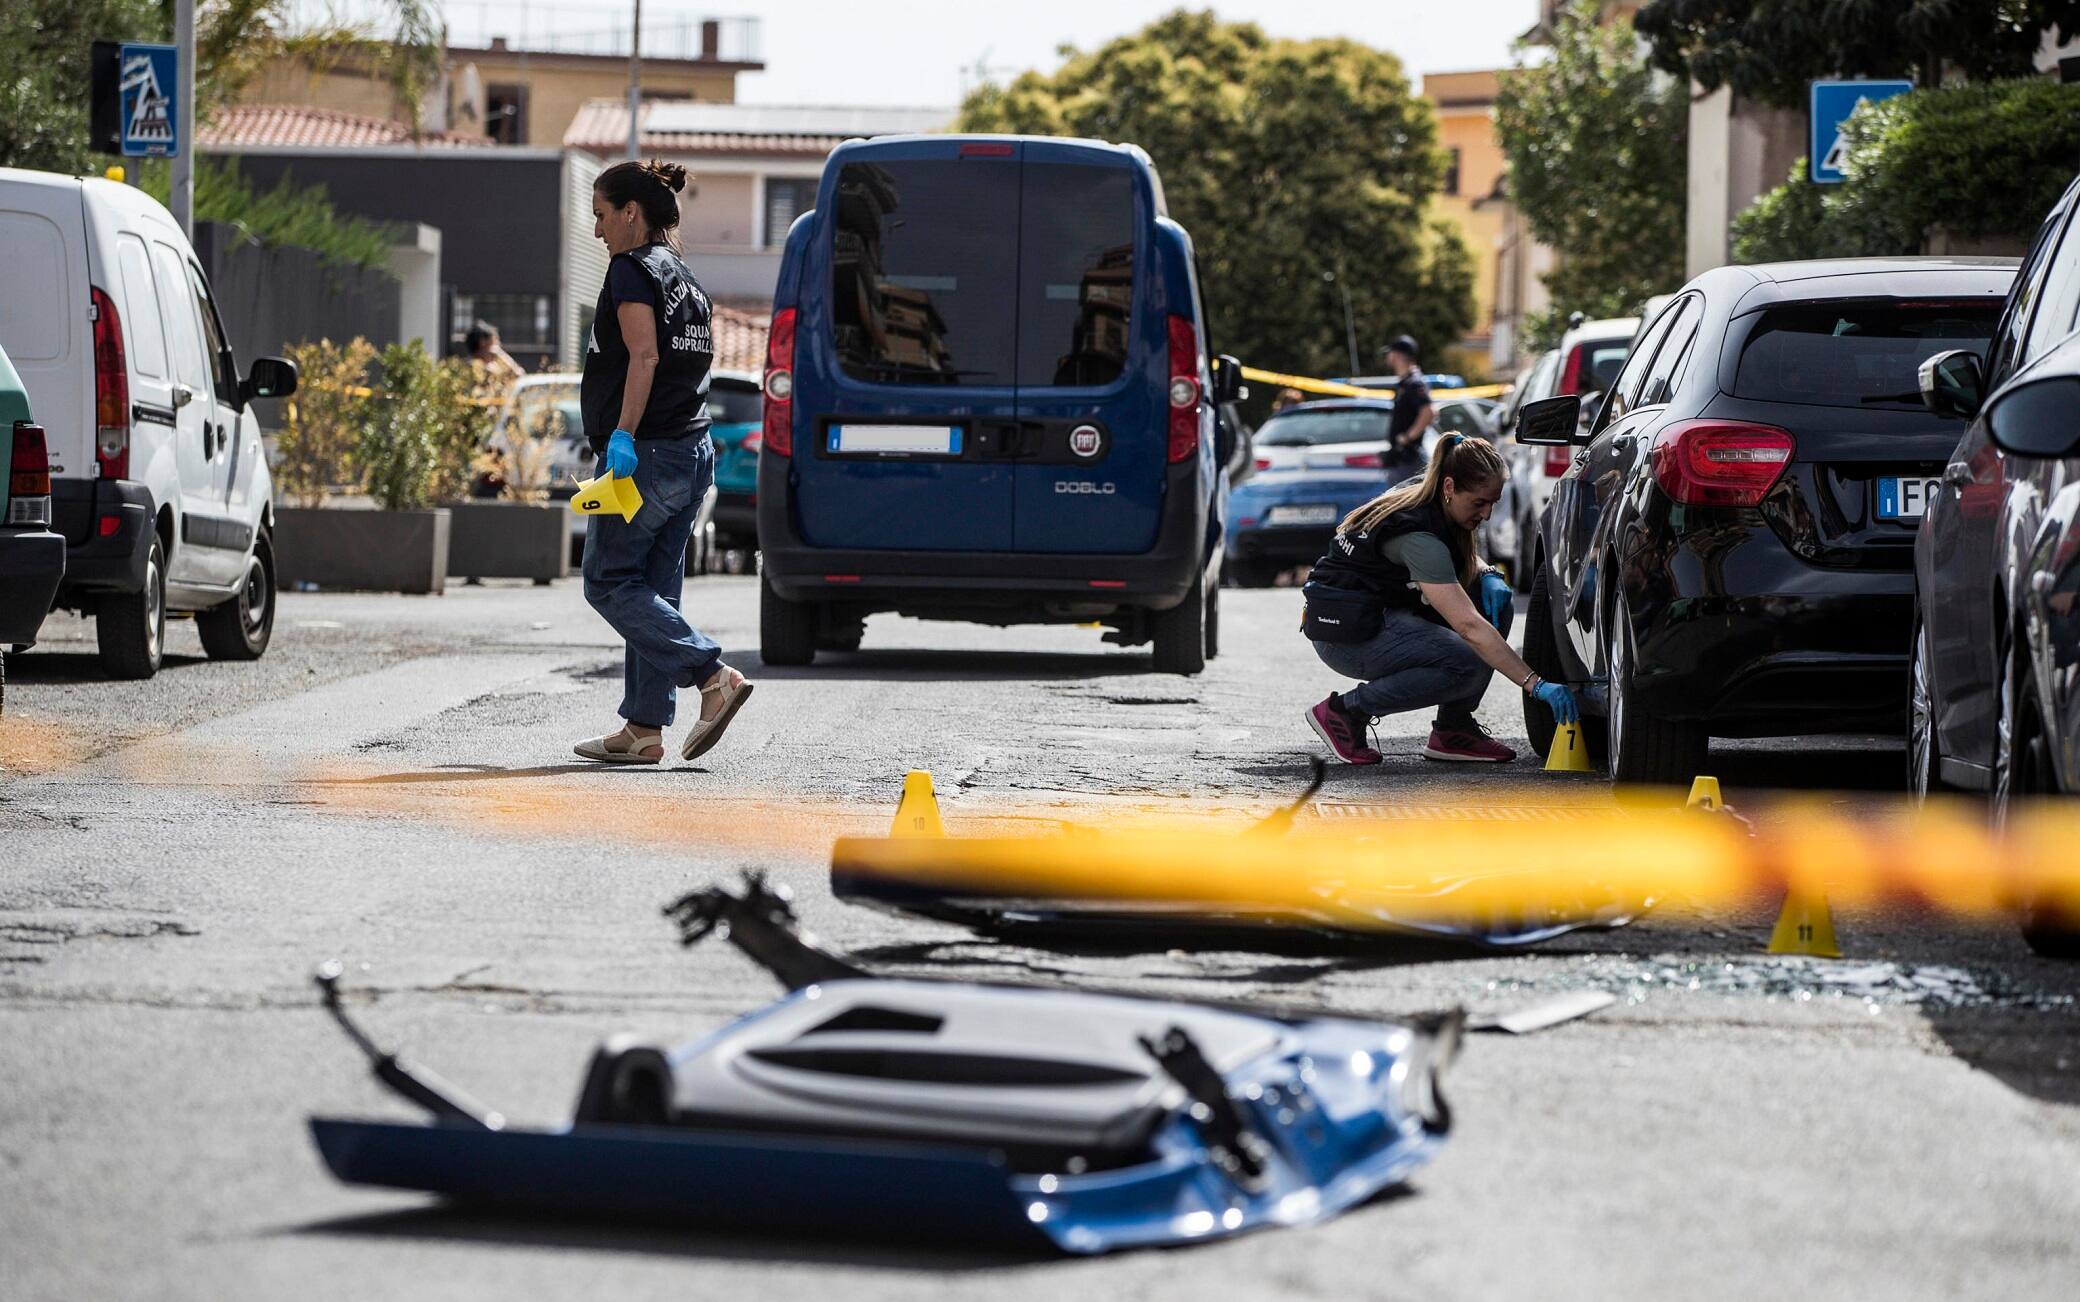 La polizia scientifica effettua i rilievi dopo l'assalto ad un portavalori in via Anteo, Roma, 1 luglio 2022. ANSA/ANGELO CARCONI